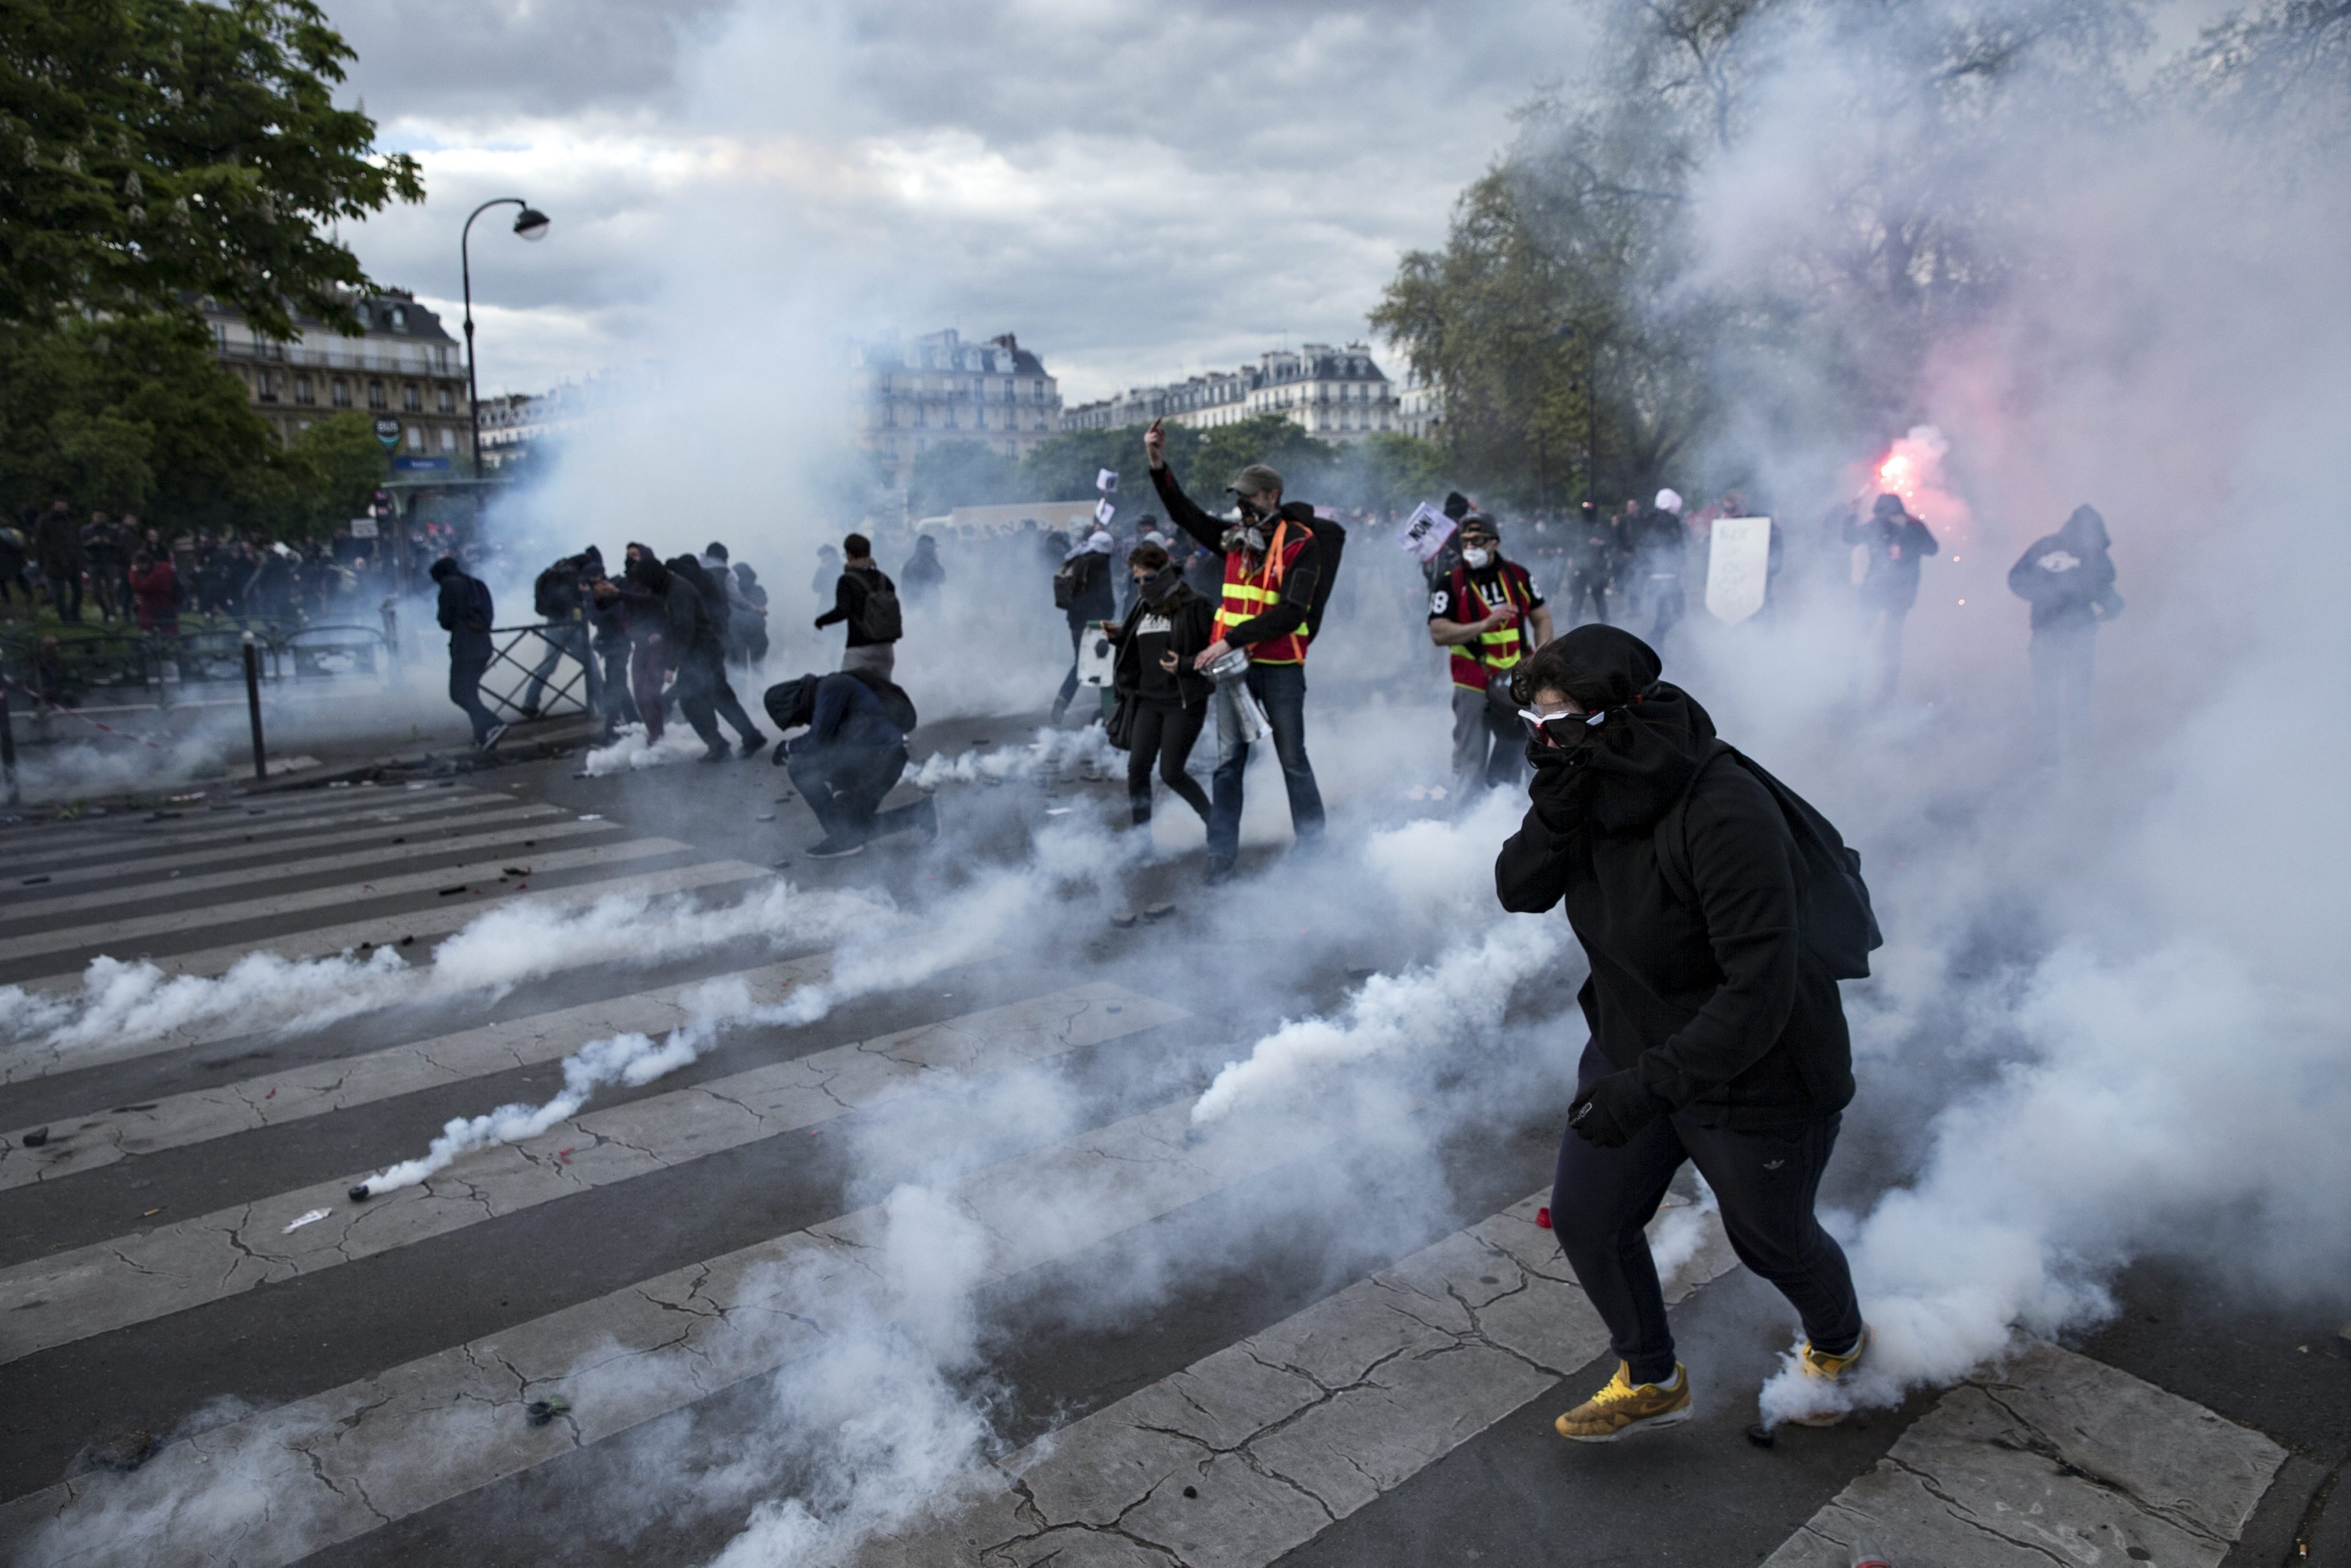 十年来最严重的骚乱席卷法国巴黎 抗议者打砸抢造成凯旋门受损-今日头条